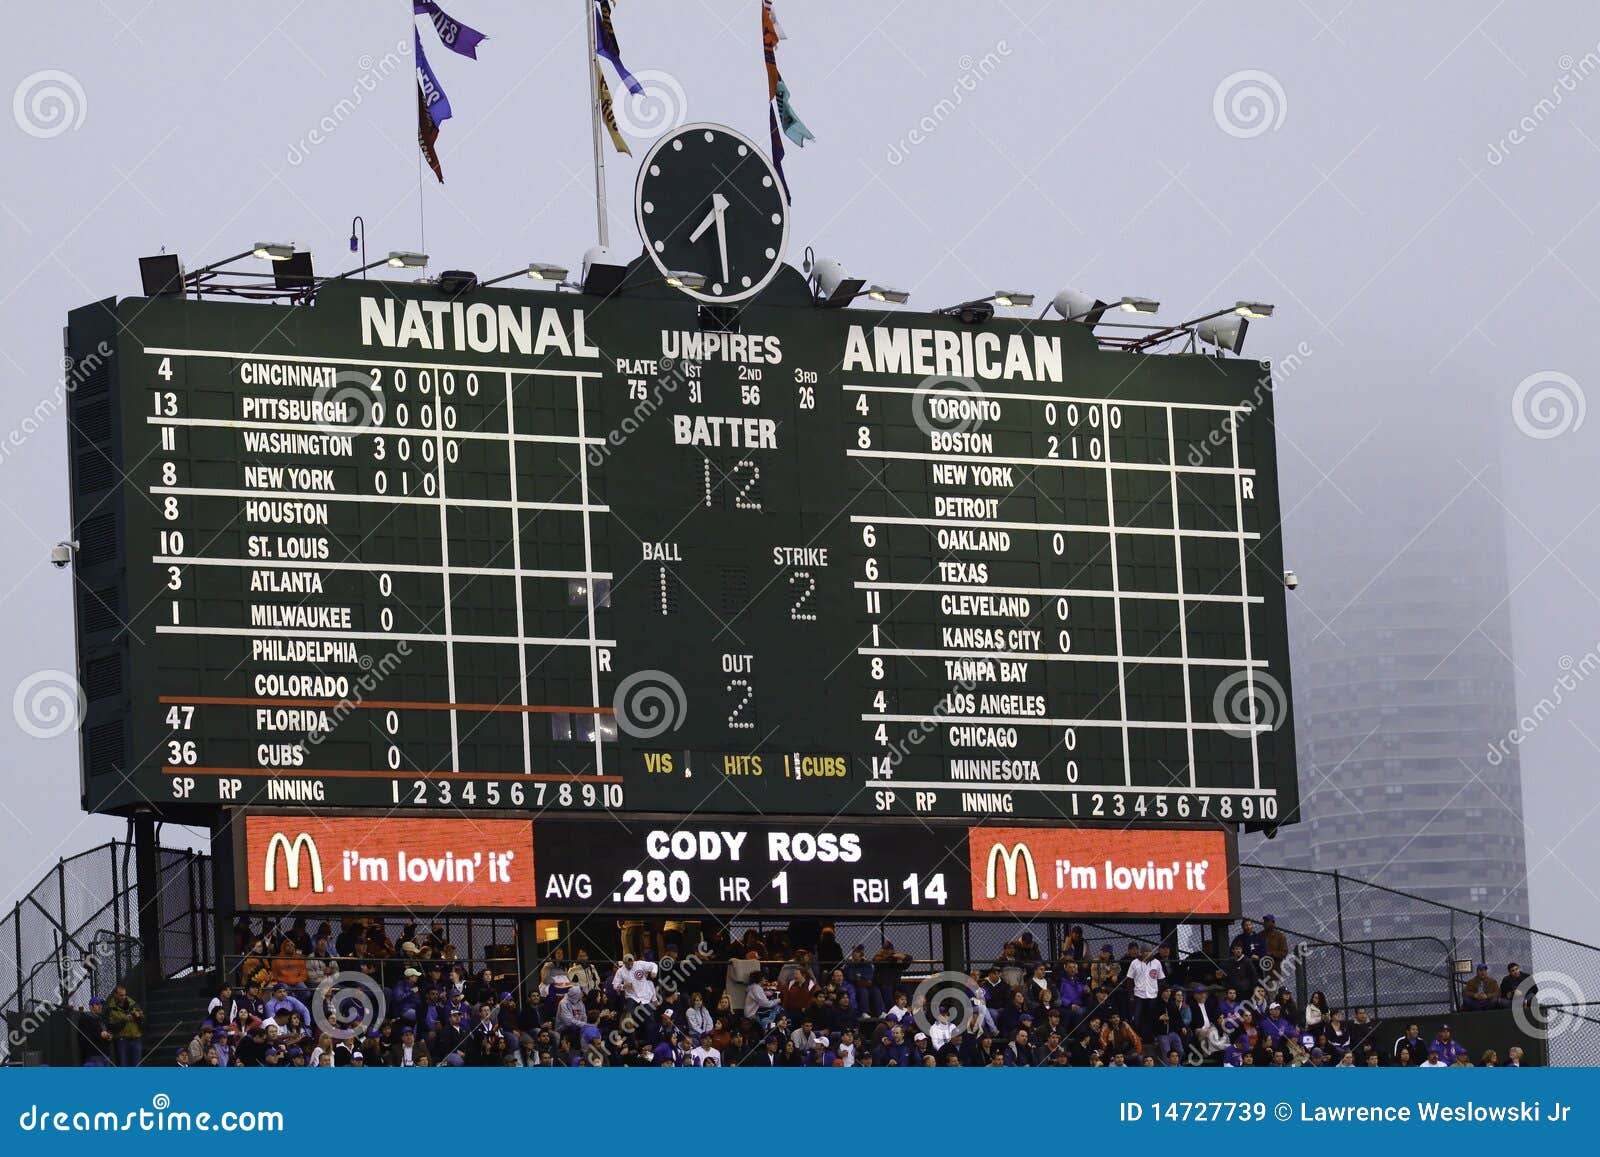 Baseball - Wrigley Field S Famous Scoreboard Editorial ...